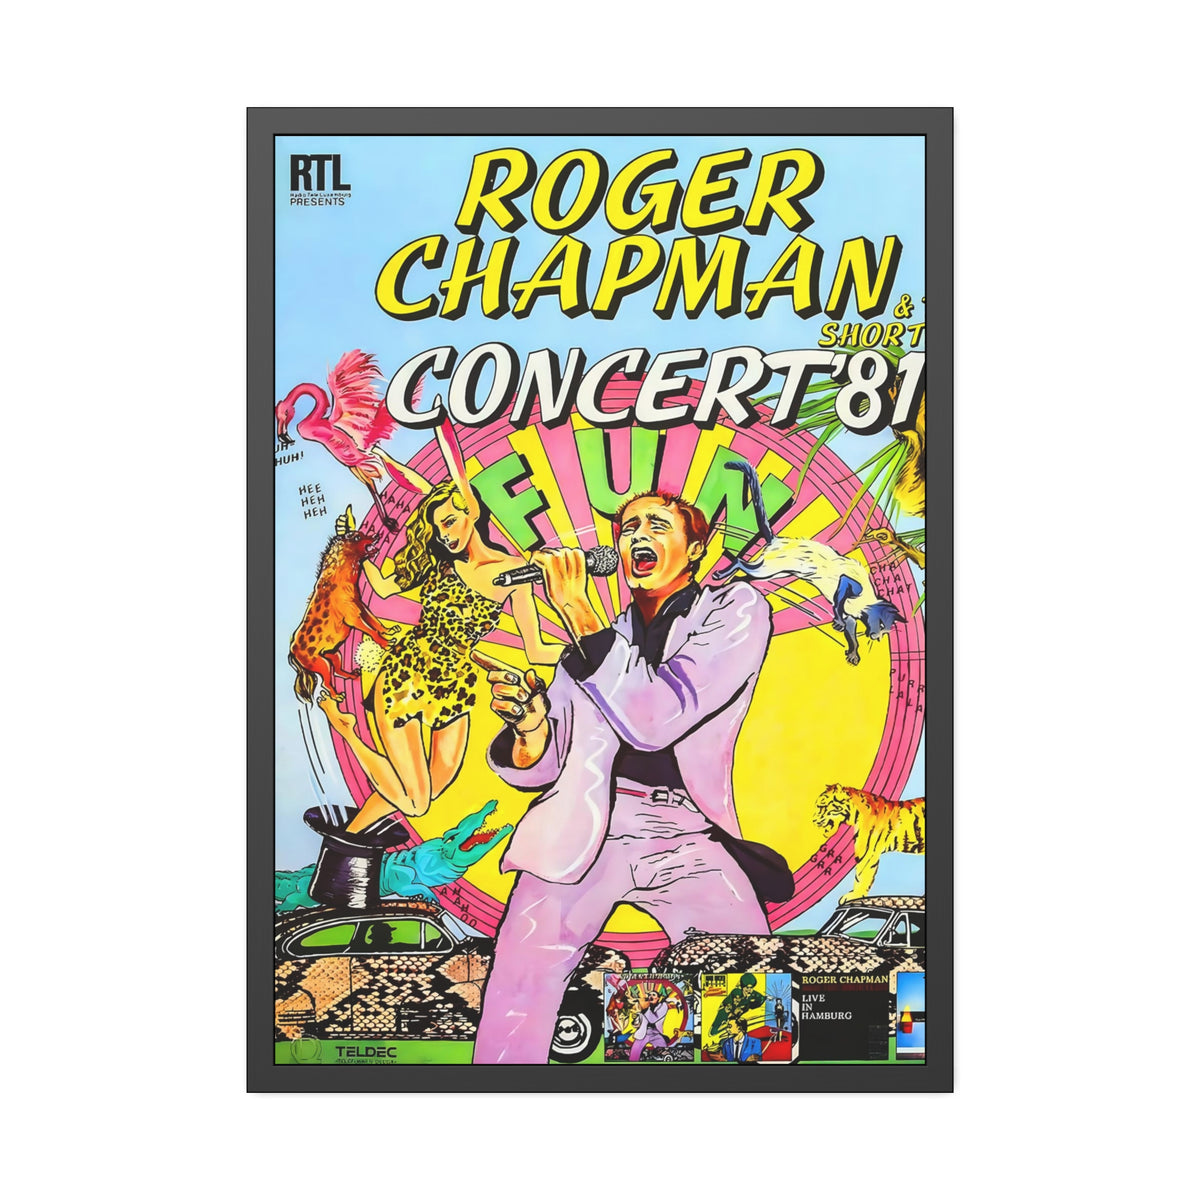 Roger Chapman Concert Poster II